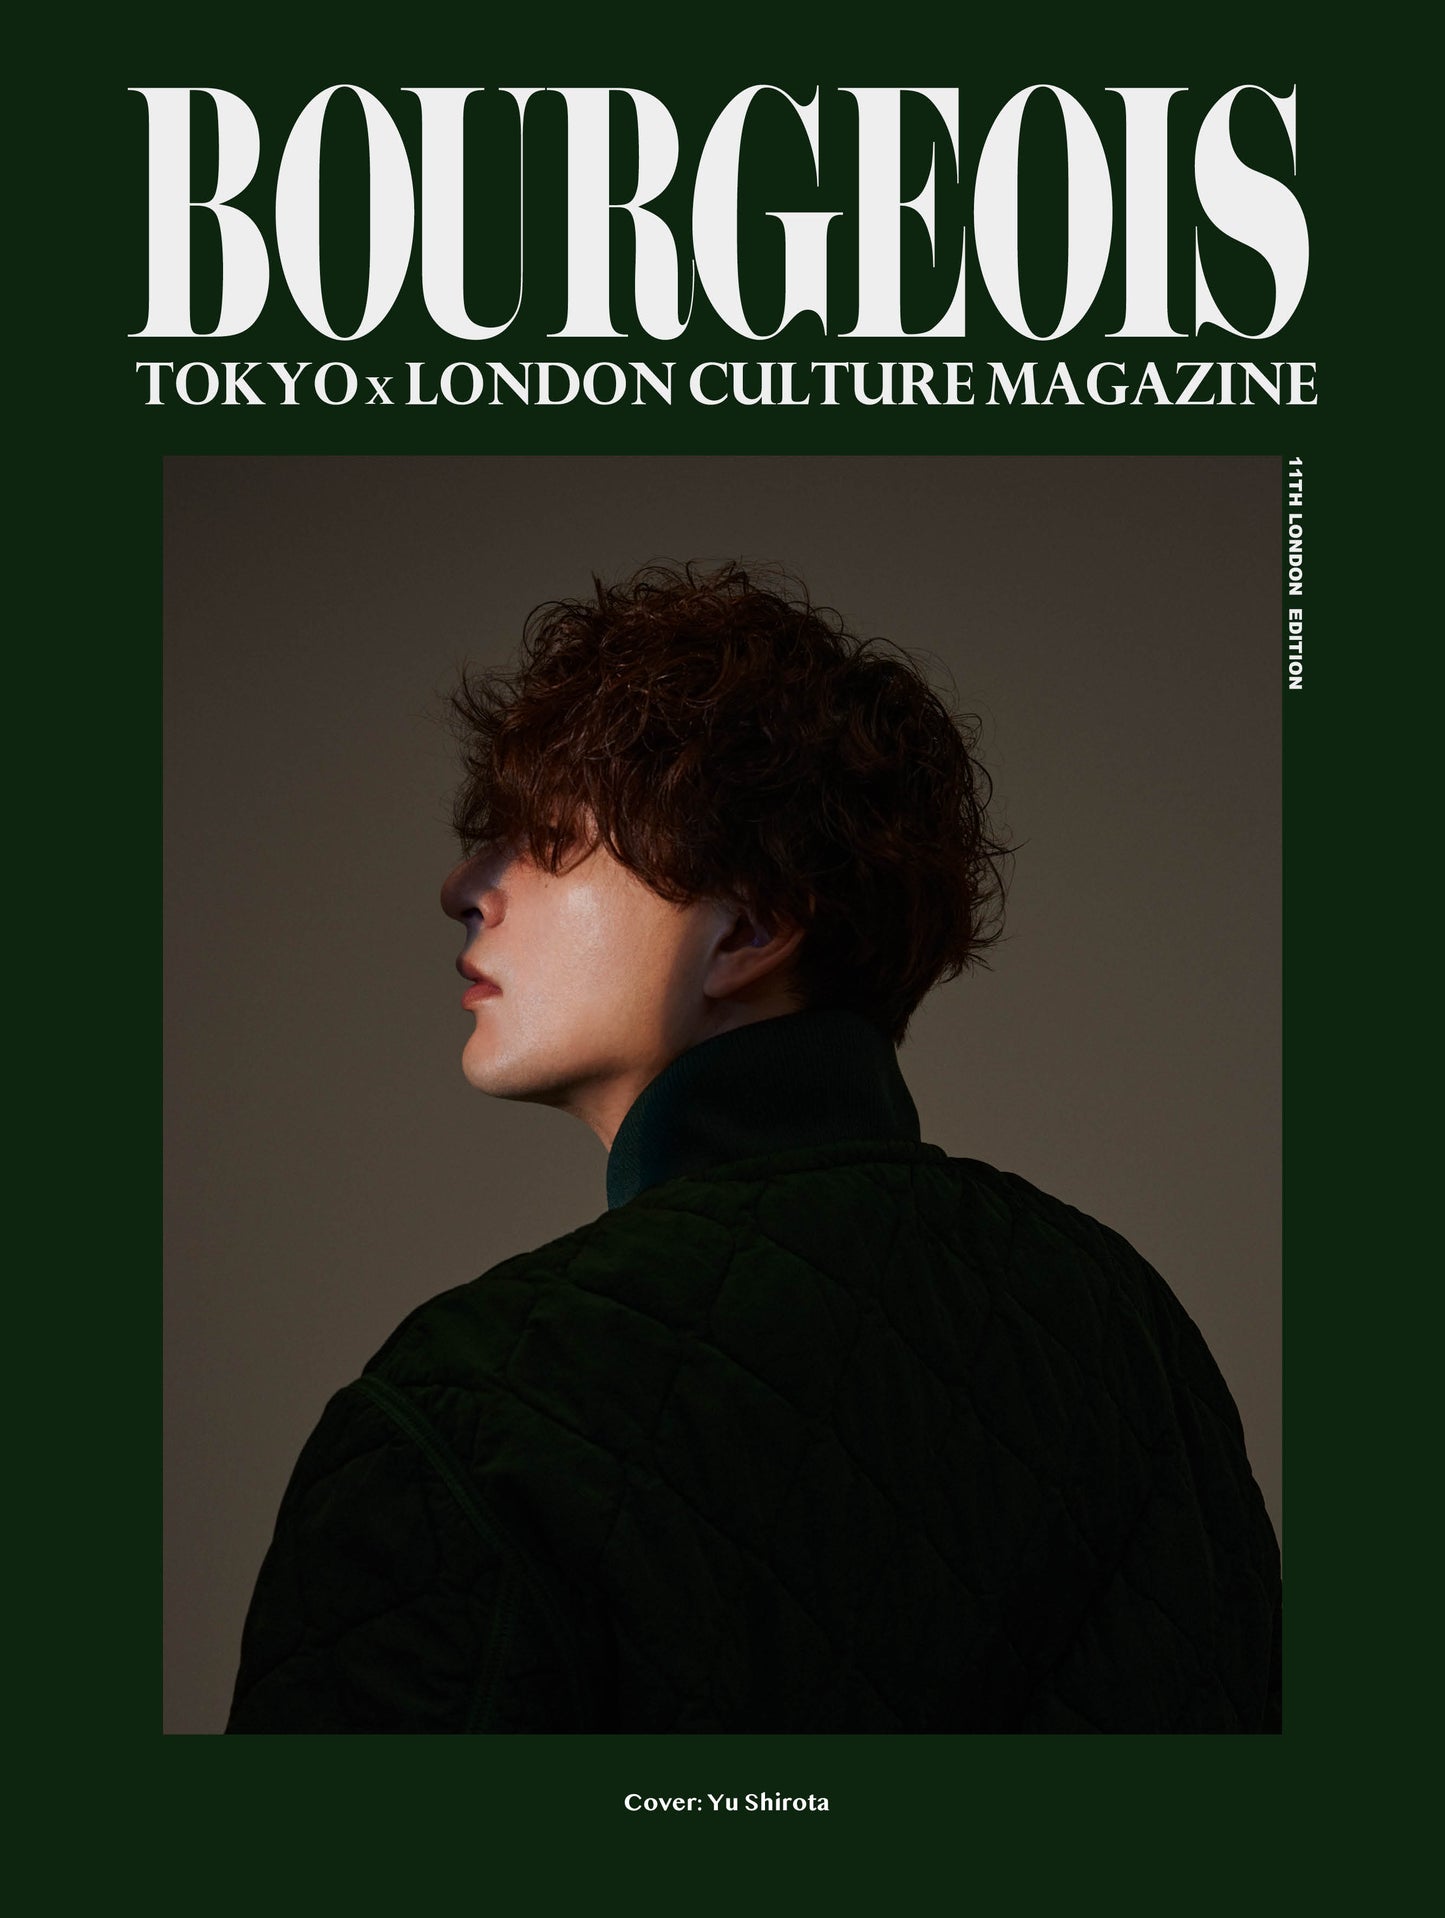 BOURGEOIS VOL.11 COVER : KOTONA MINAMI/YU SHIROTA